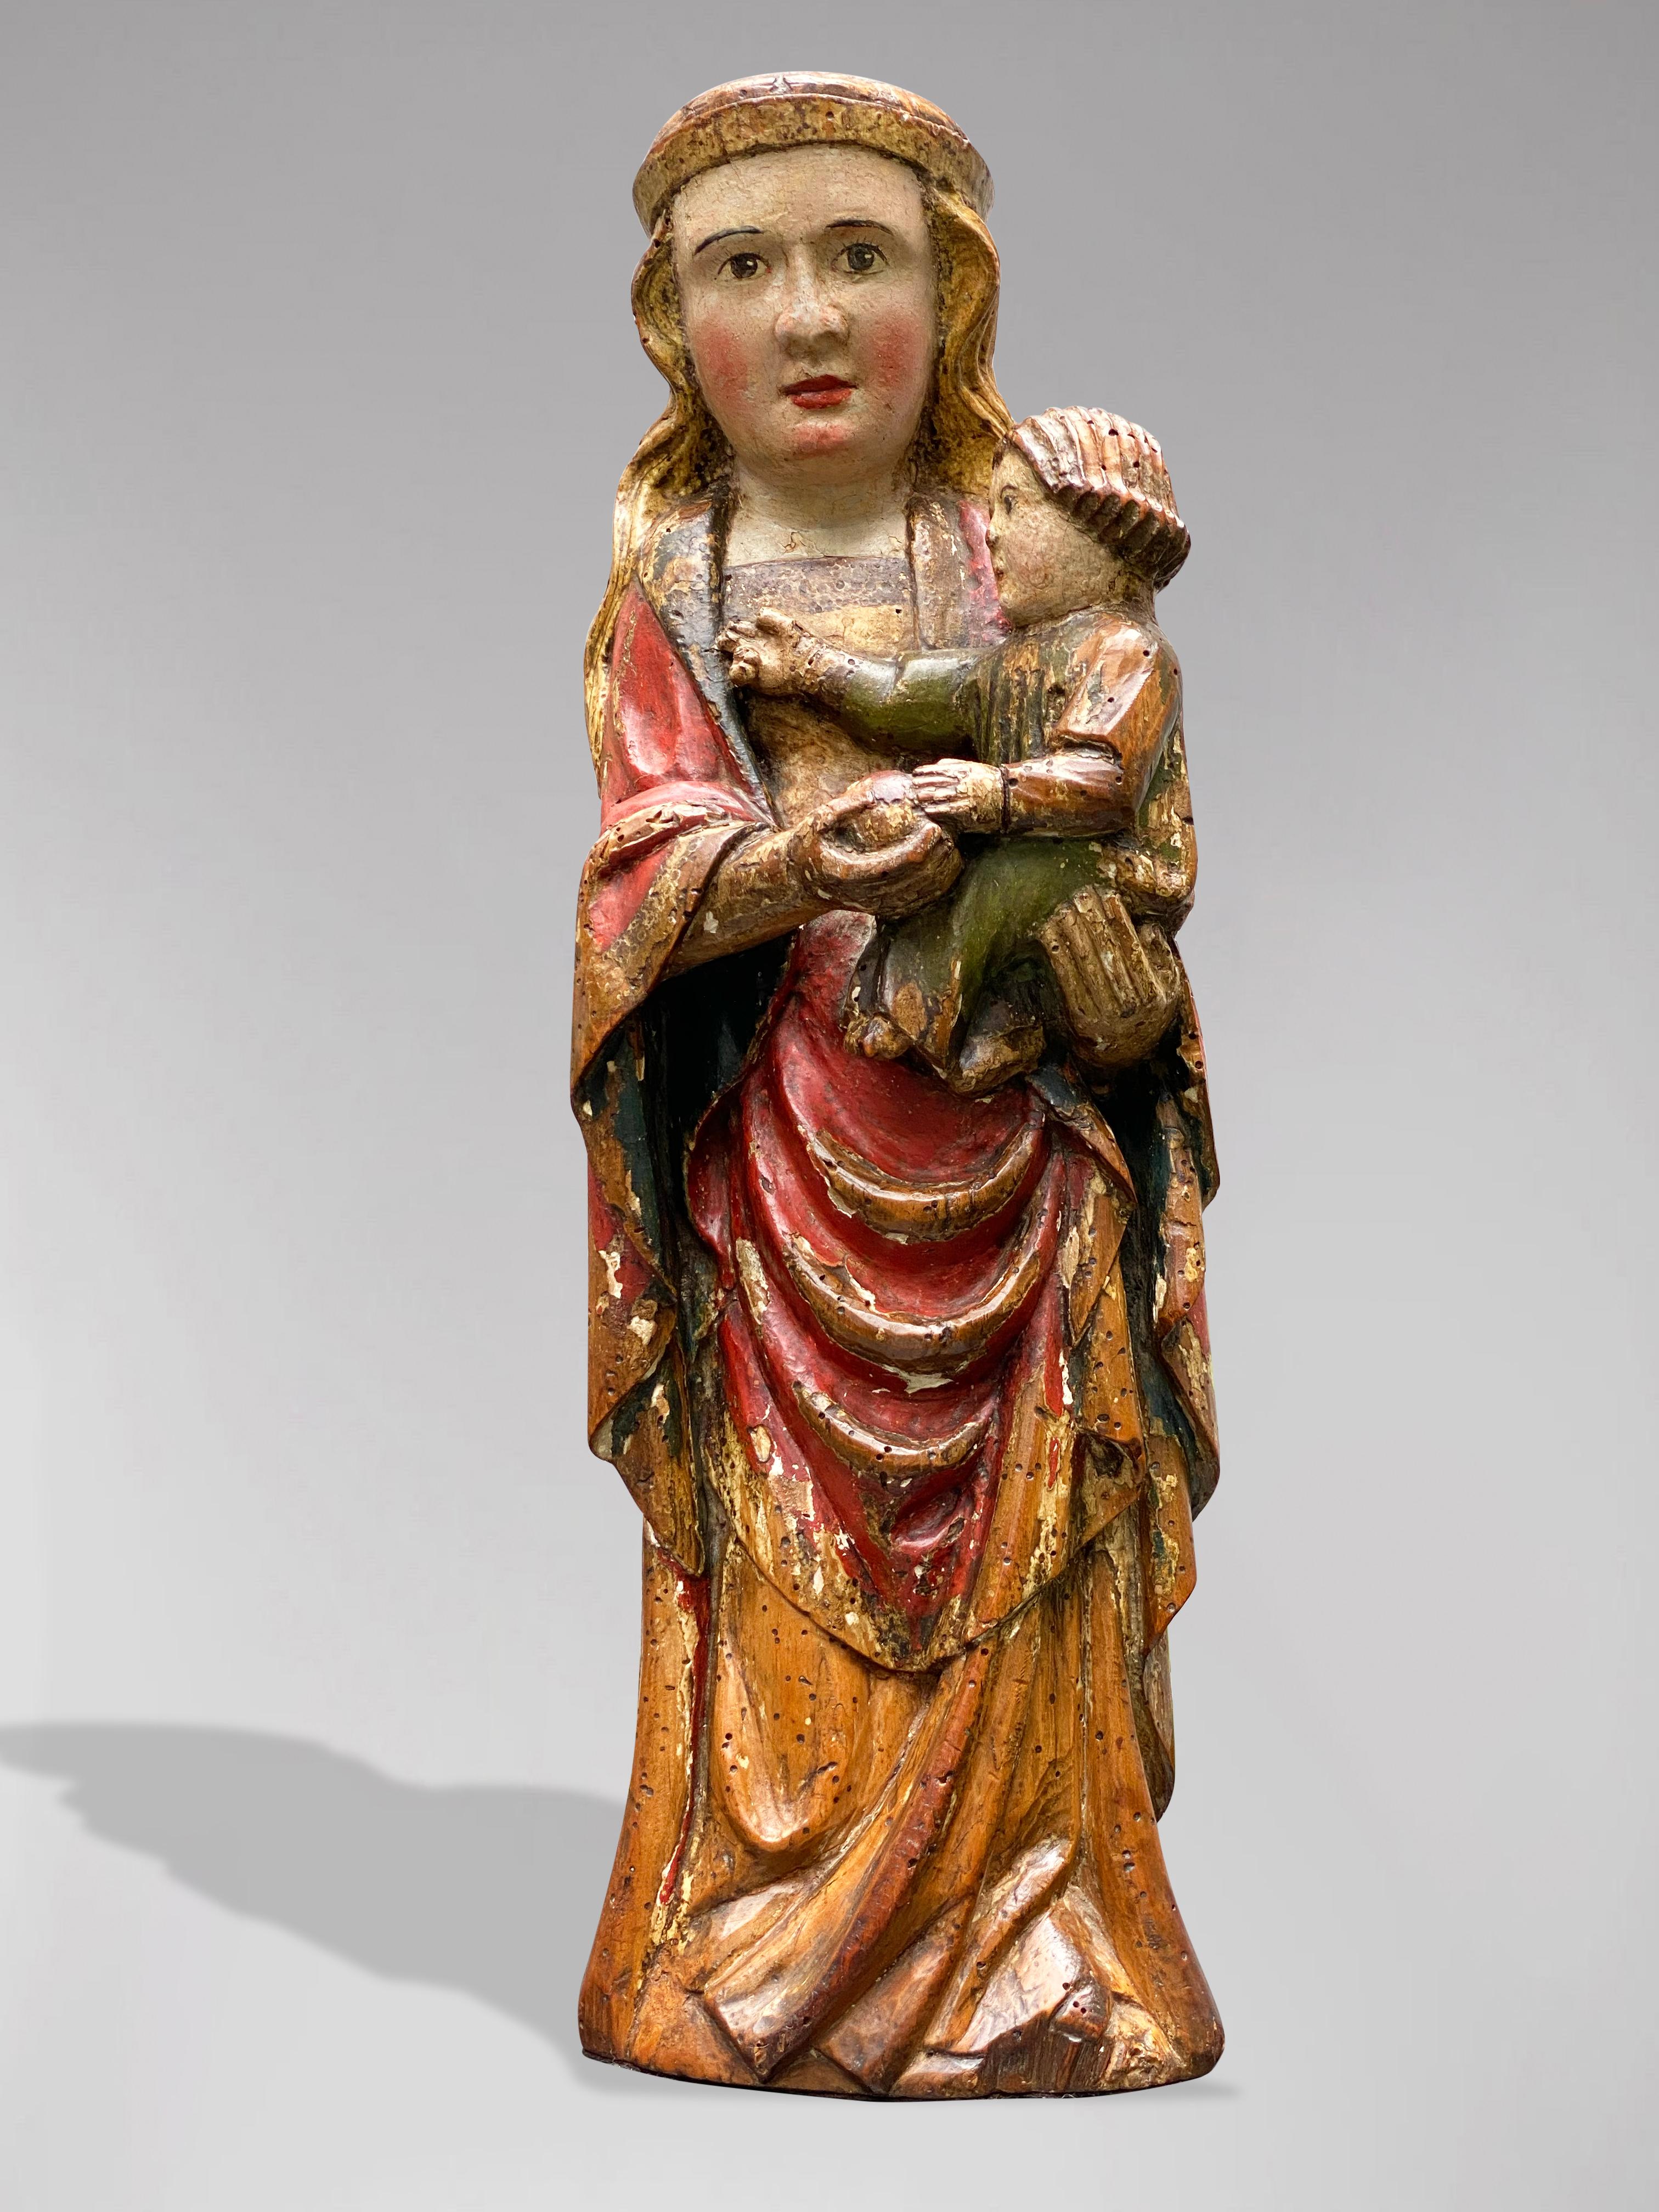 Unknown Figurative Sculpture – Spanische Statue der Jungfrau Maria mit dem Kind Jezus, um 1600